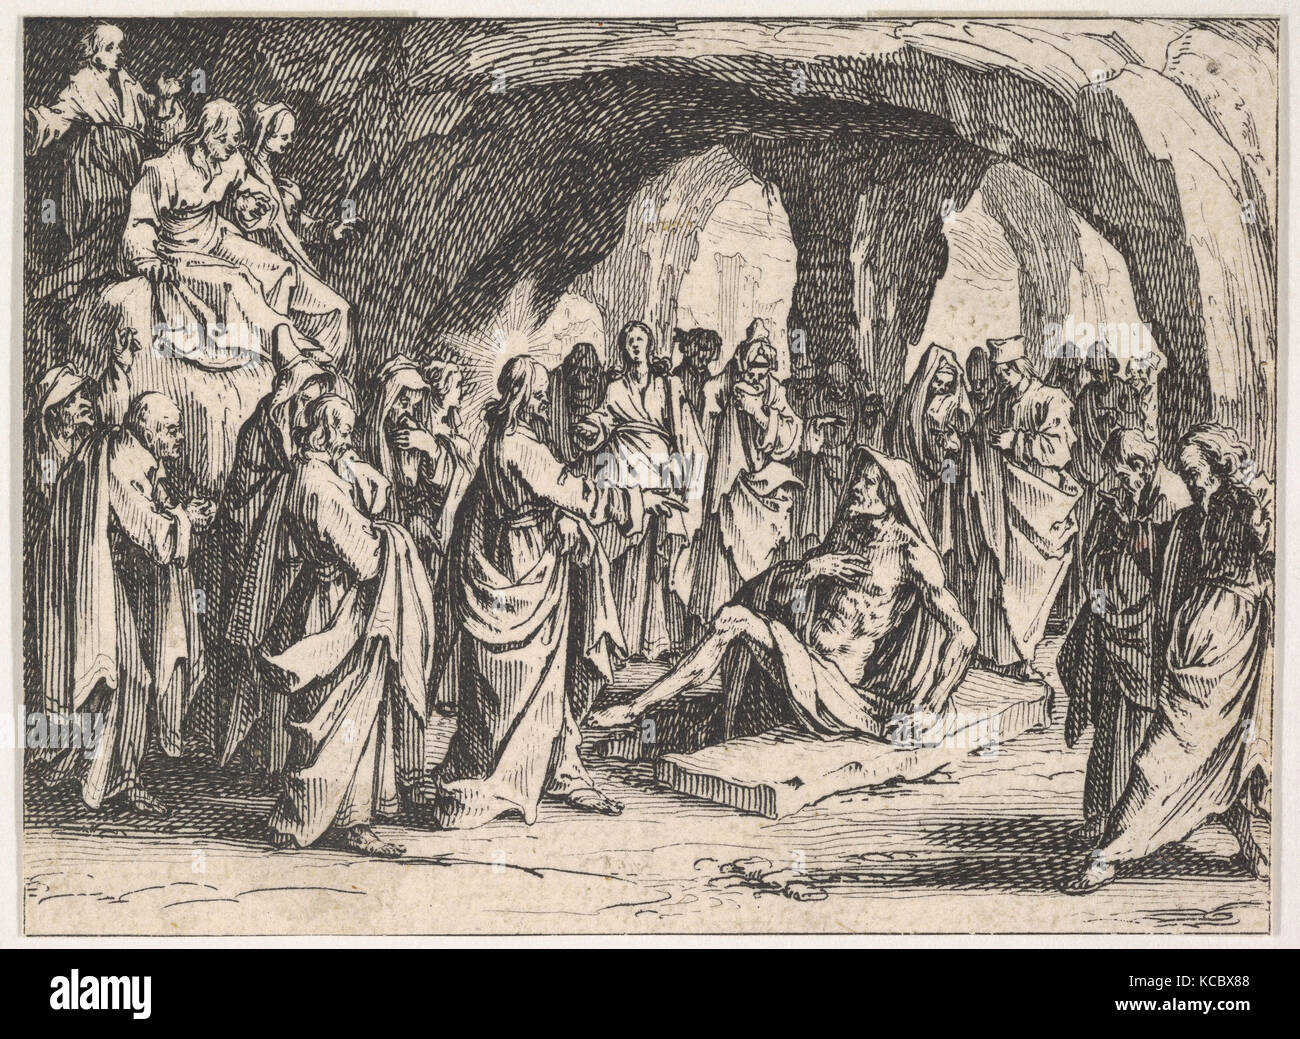 La résurrection de Lazare (La résurrection de Lazare), situé dans une grotte, à partir de la série "Le Nouveau Testament Banque D'Images